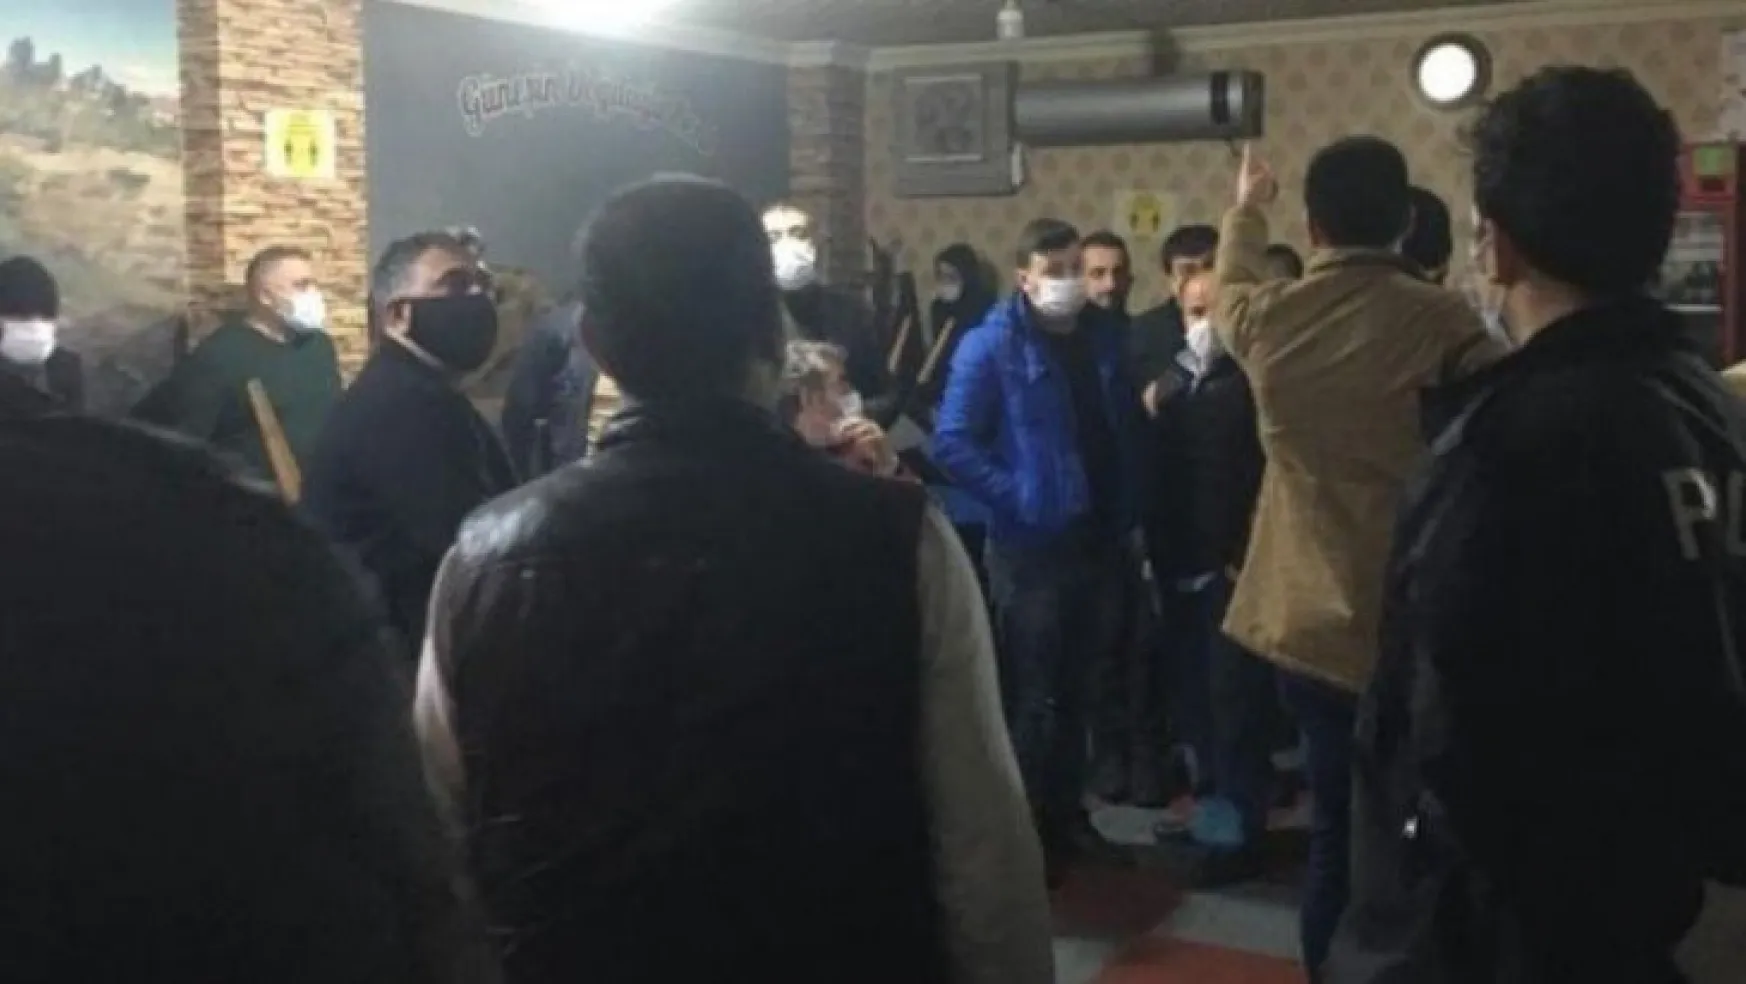 Kocaeli'de kumarhaneye çevrilen kahvehaneye polis baskını 